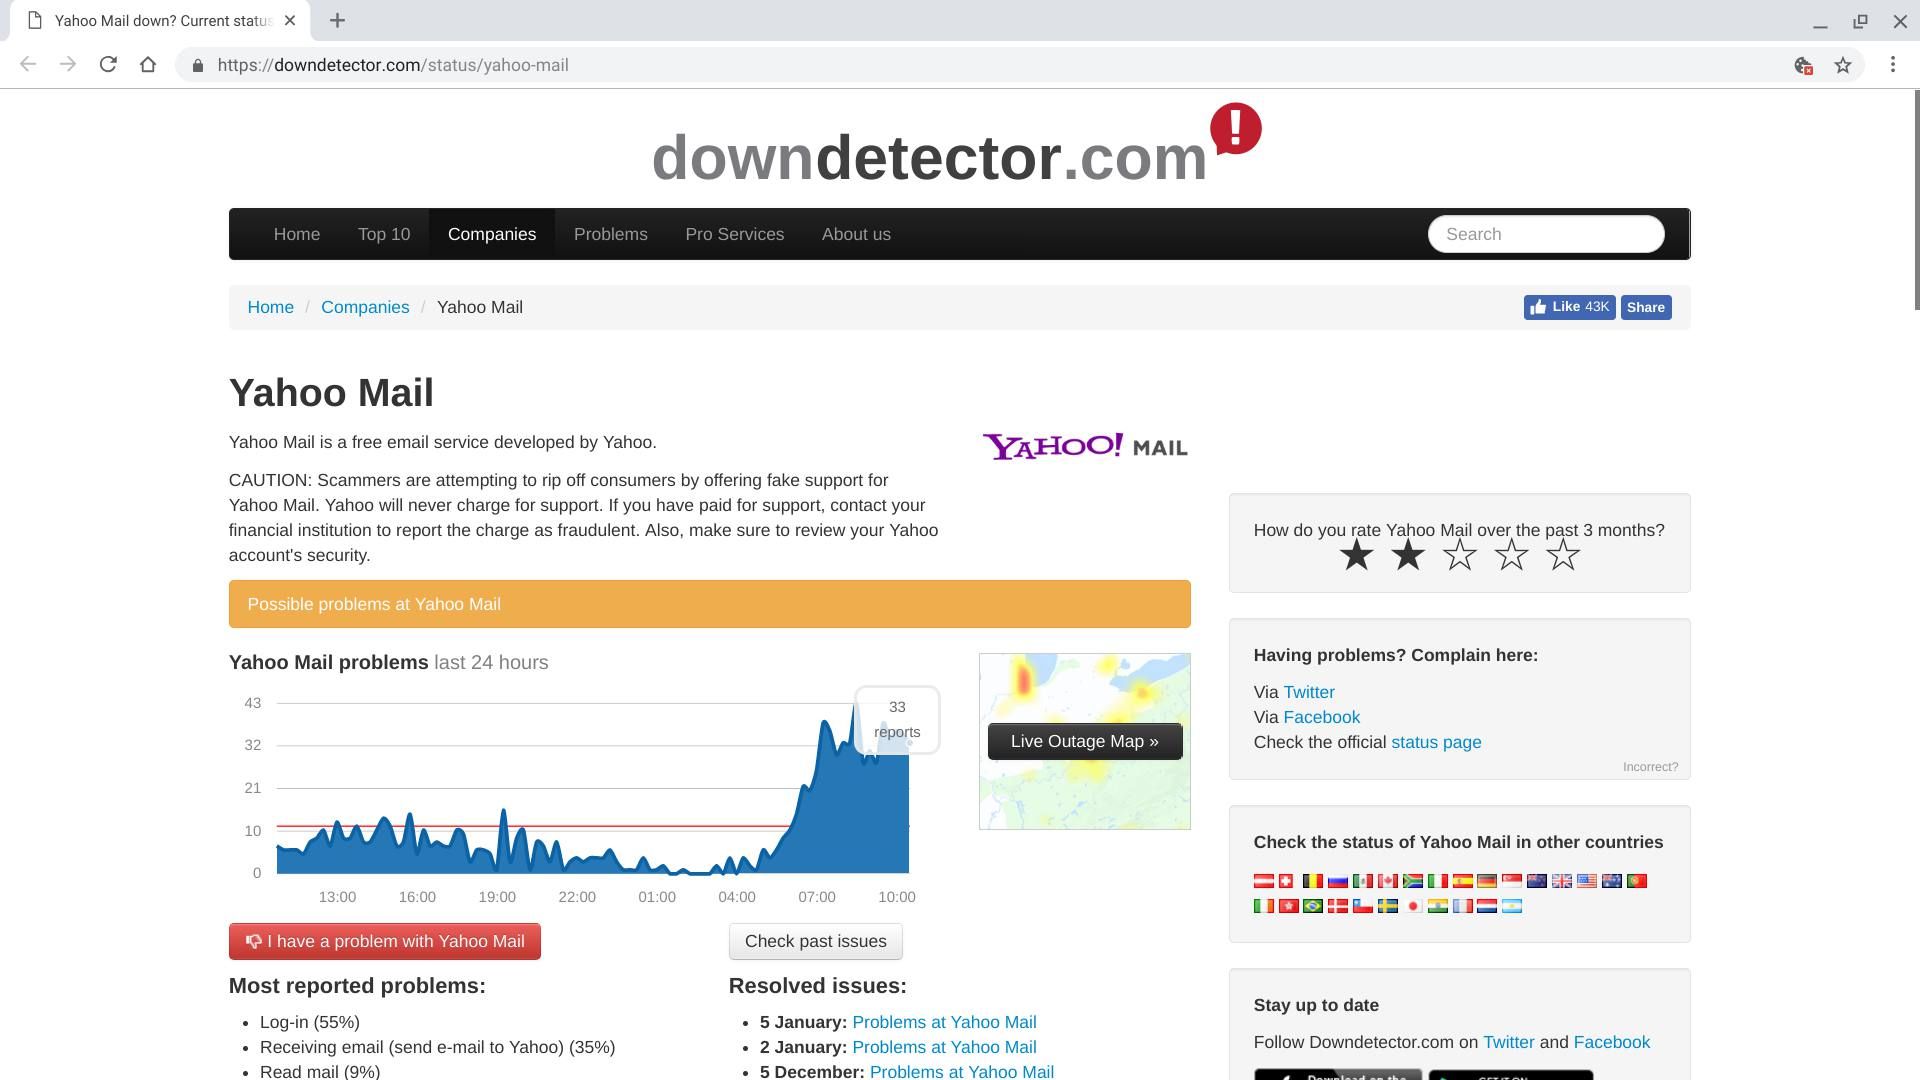 Скриншот страницы Yahoo Mail на downdetector.com, показывающий последние проблемы